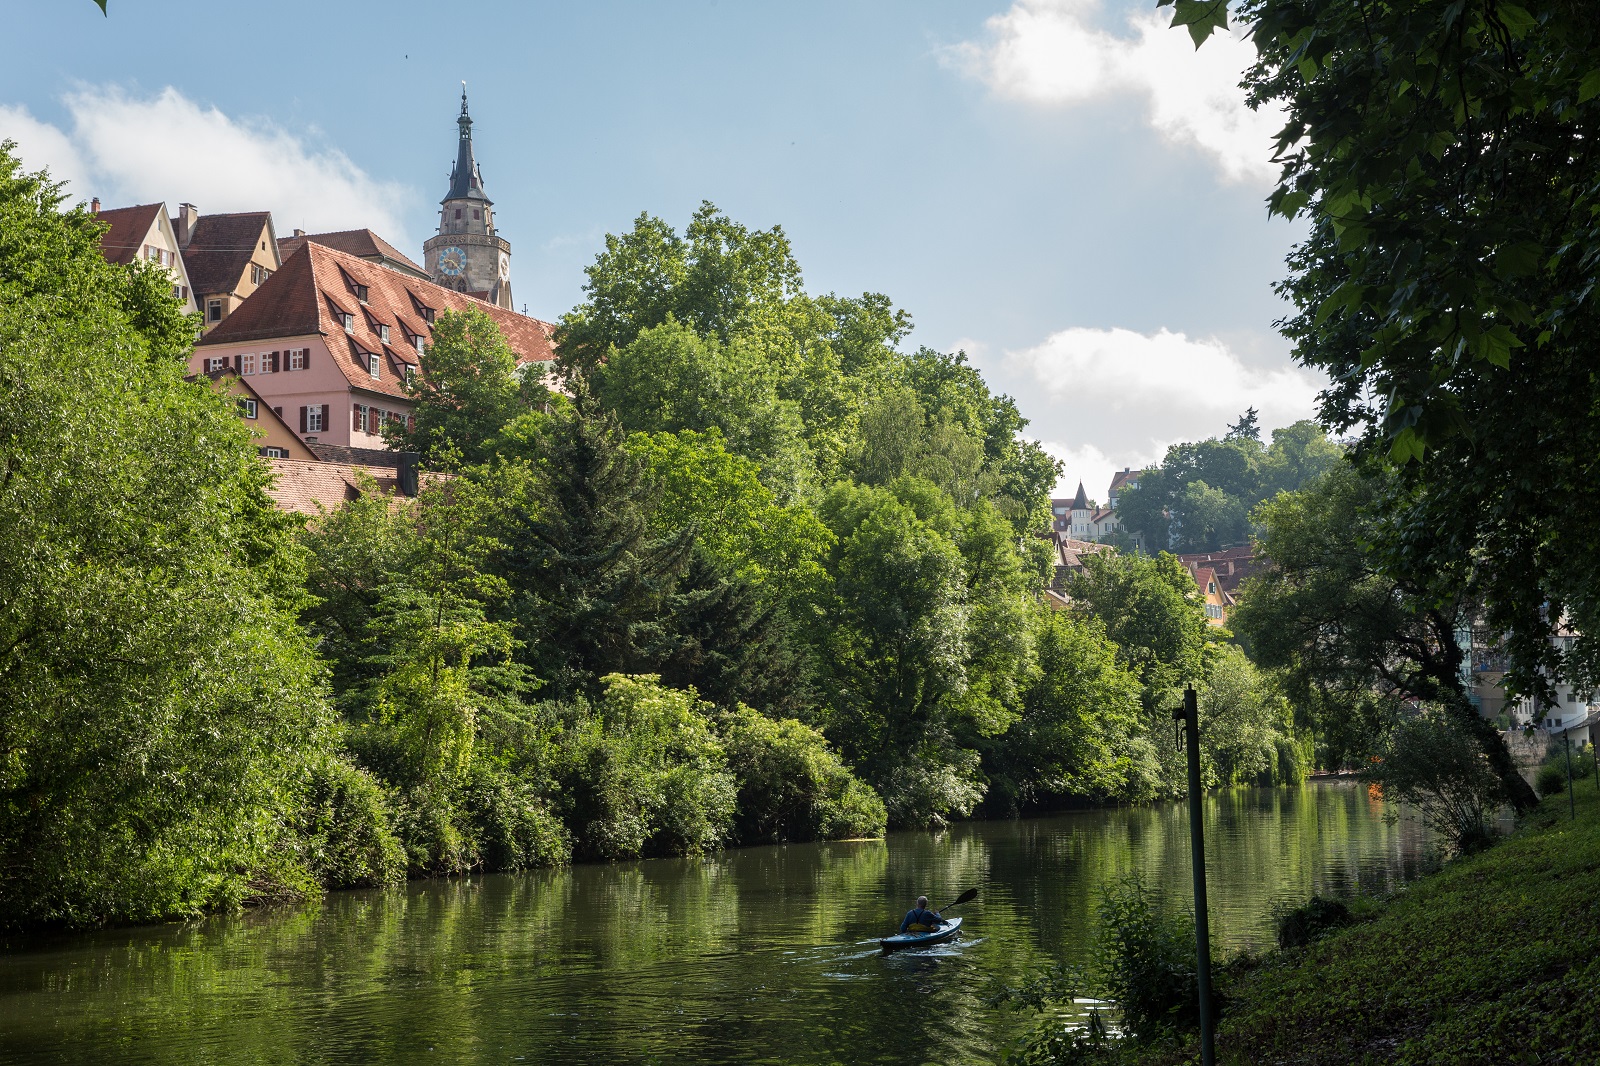 Im Vordergrund der Neckar, das Ufer mit Bäumen und im Hintergrund die Altstadt und die Stiftskirche.